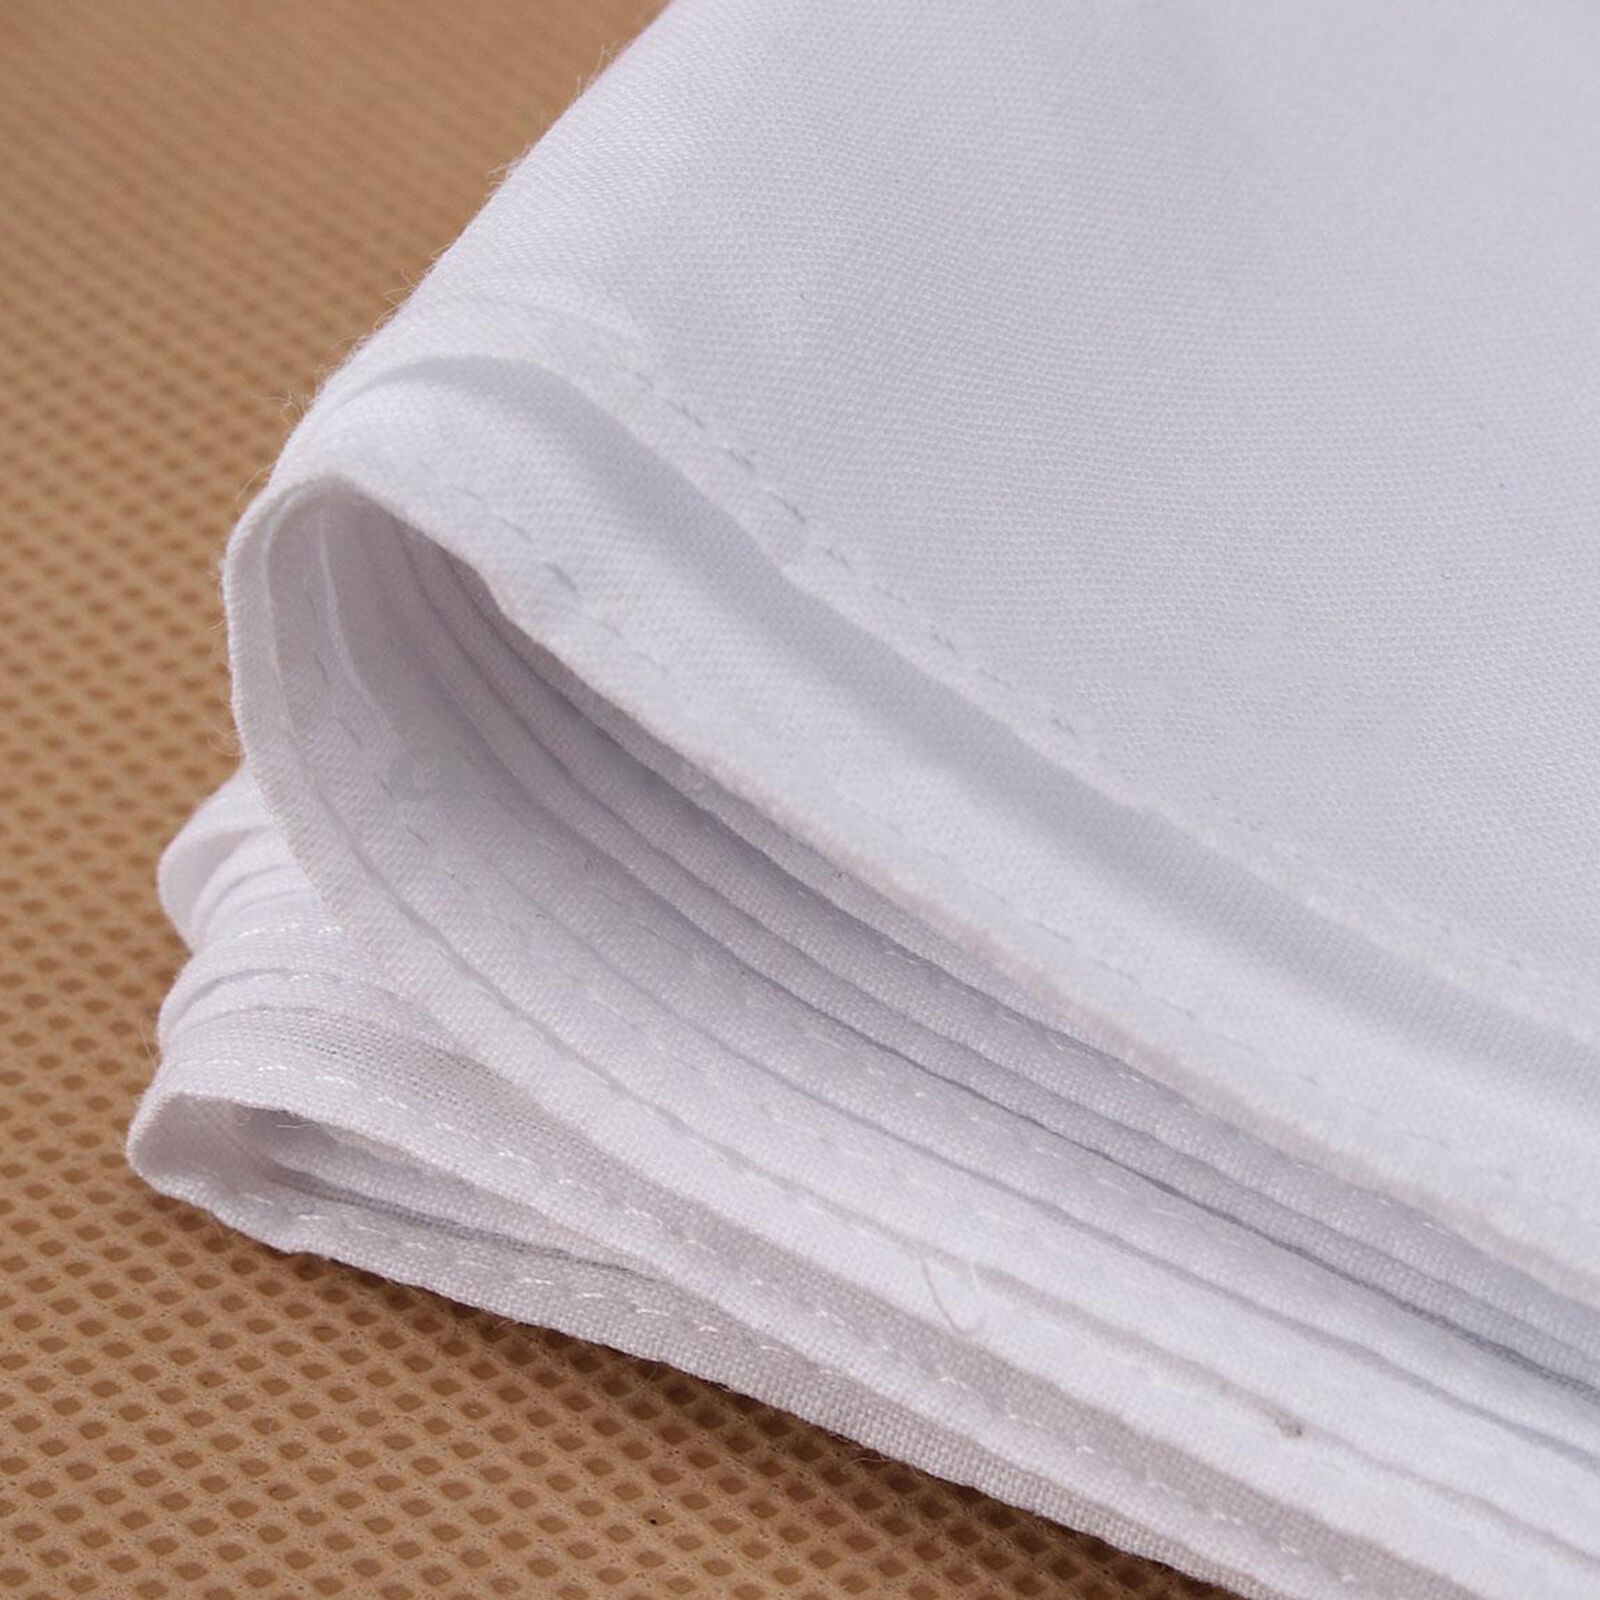 12pcs Men Plain White Cotton Handkerchiefs Hankies Sweat Face Towel 28*28cm